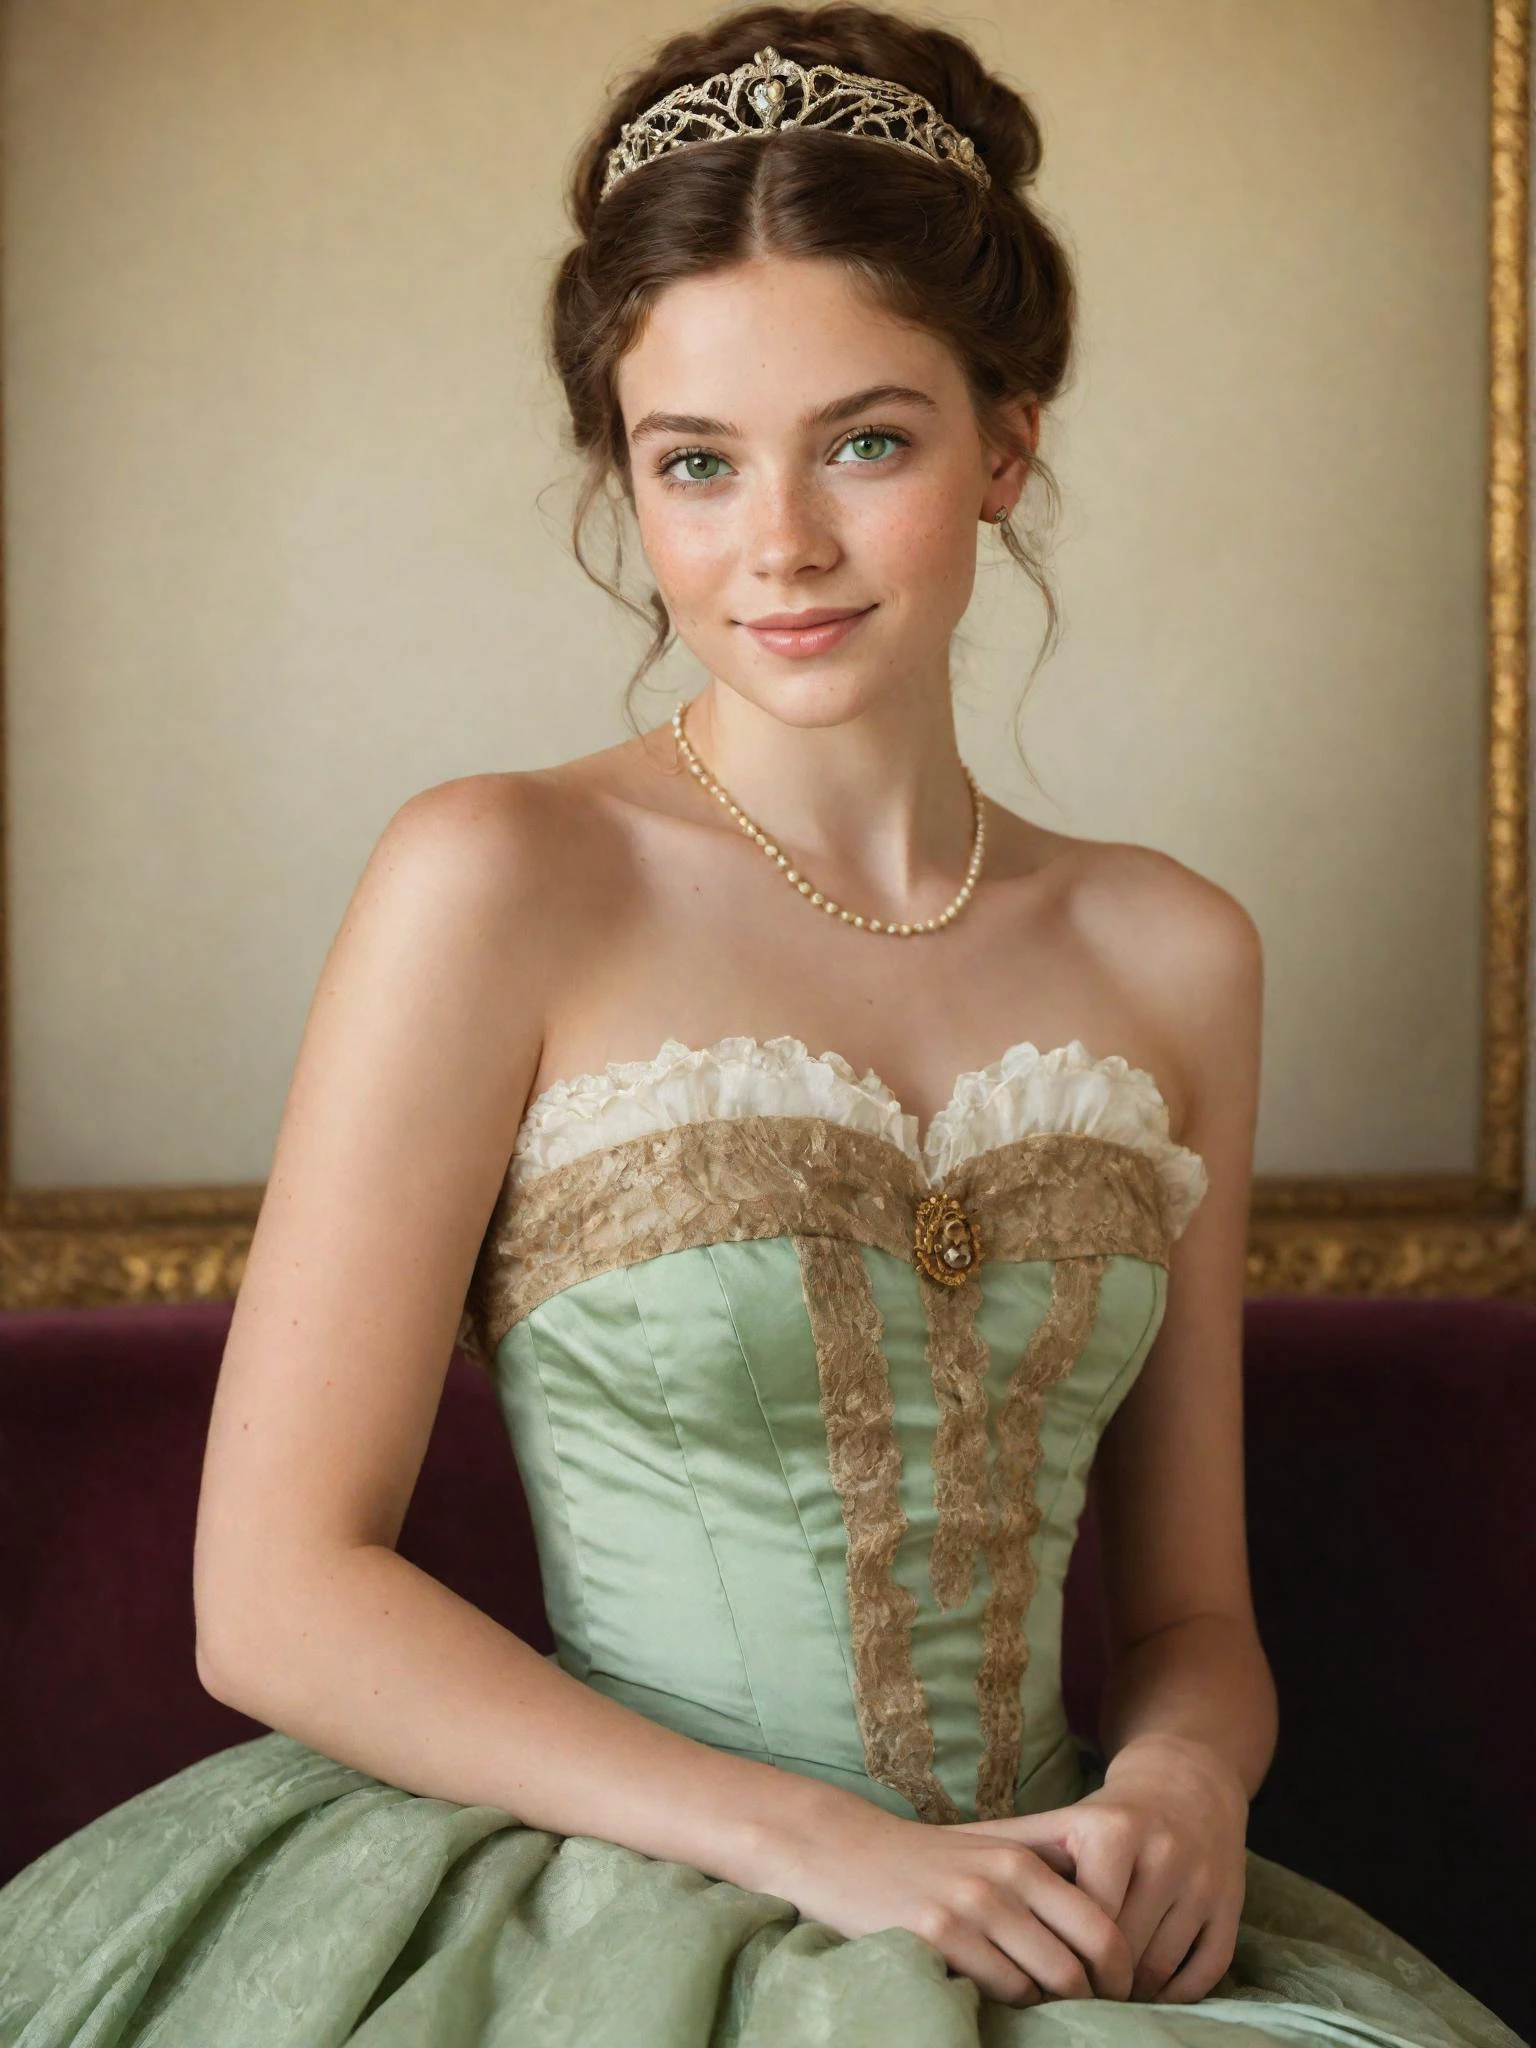 retrato de uma jovem princesa vitoriana rica, olhos verdes, sorriso fino, Vestido sem alças, sardas, detalhes da pele, cabelo castanho ornamentado, foto espontânea amadora